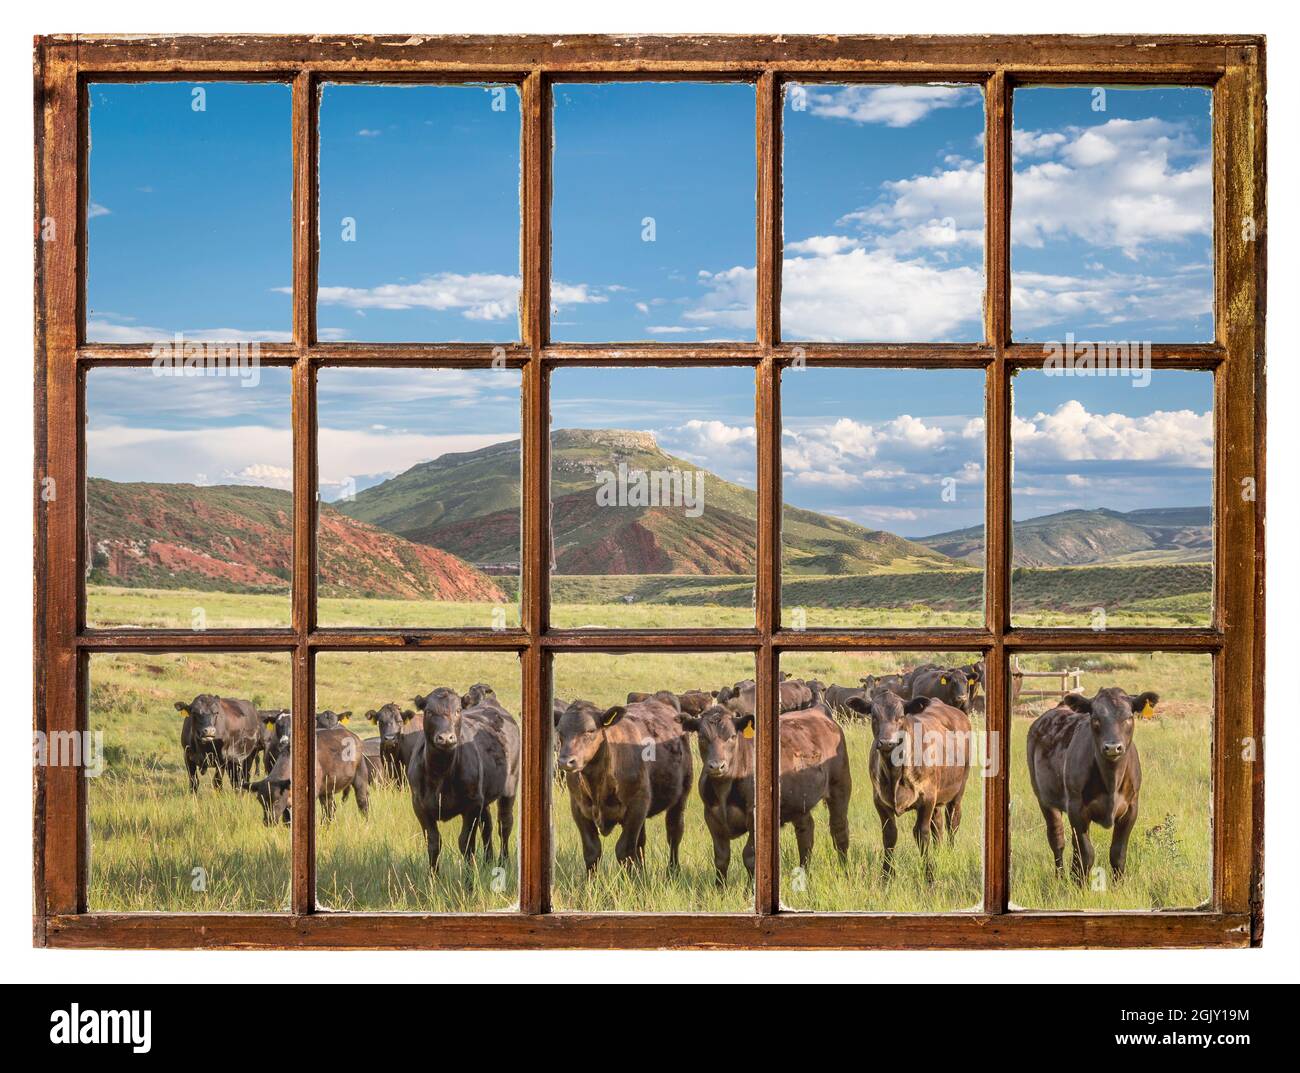 Bétail à aire ouverte paître aux contreforts des montagnes Rocheuses dans le nord du Colorado, vu d'une fenêtre de cabane d'époque Banque D'Images